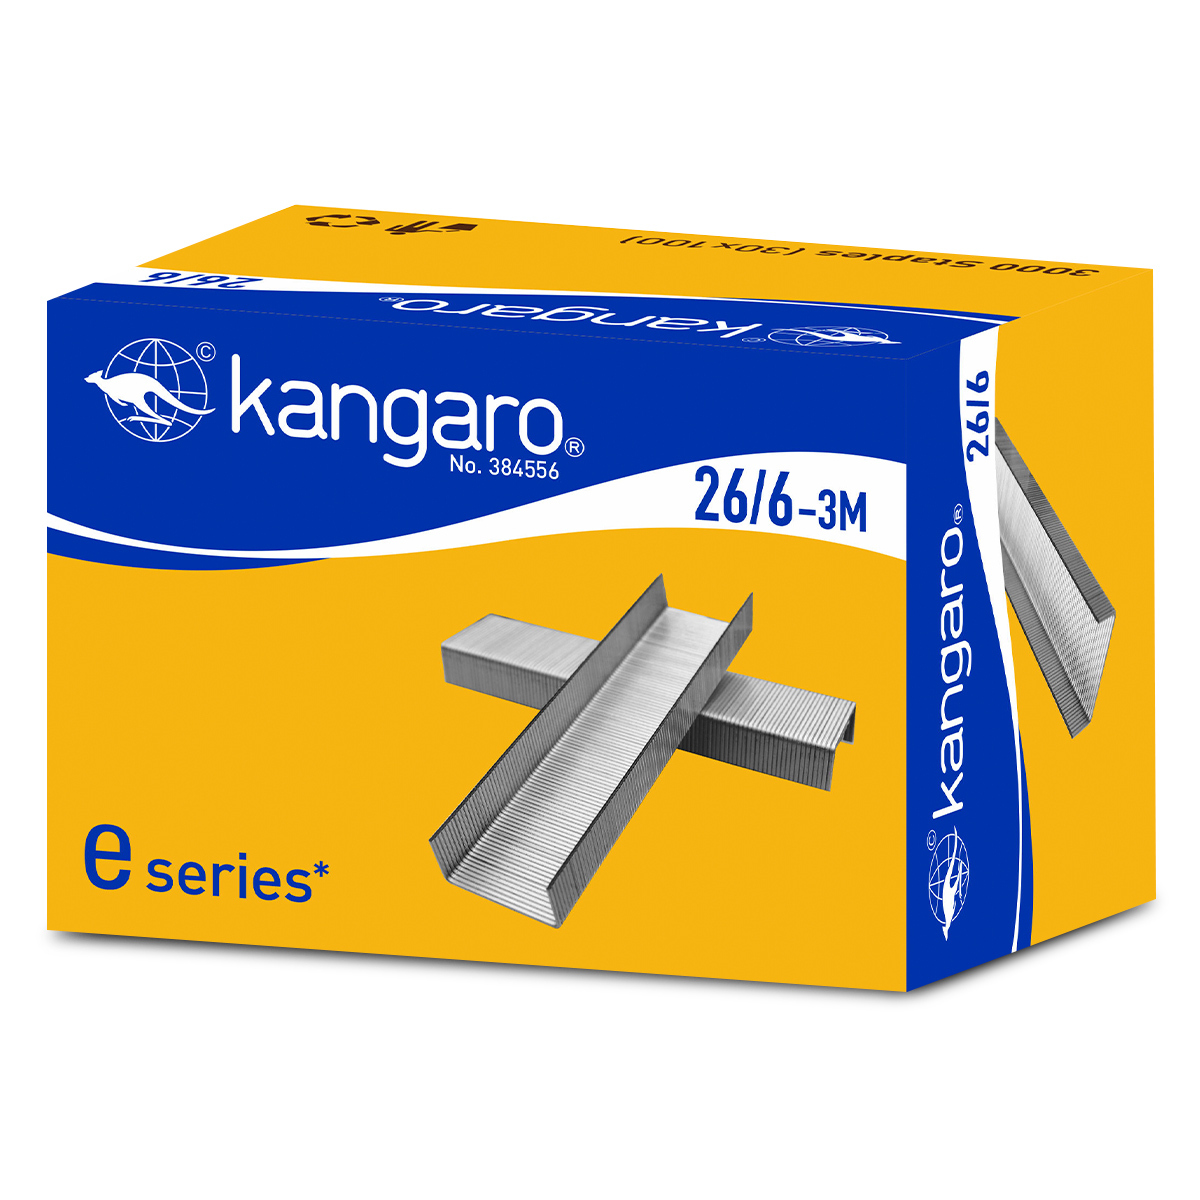  Kangaro Grapas resistentes 23/6 : Productos de Oficina